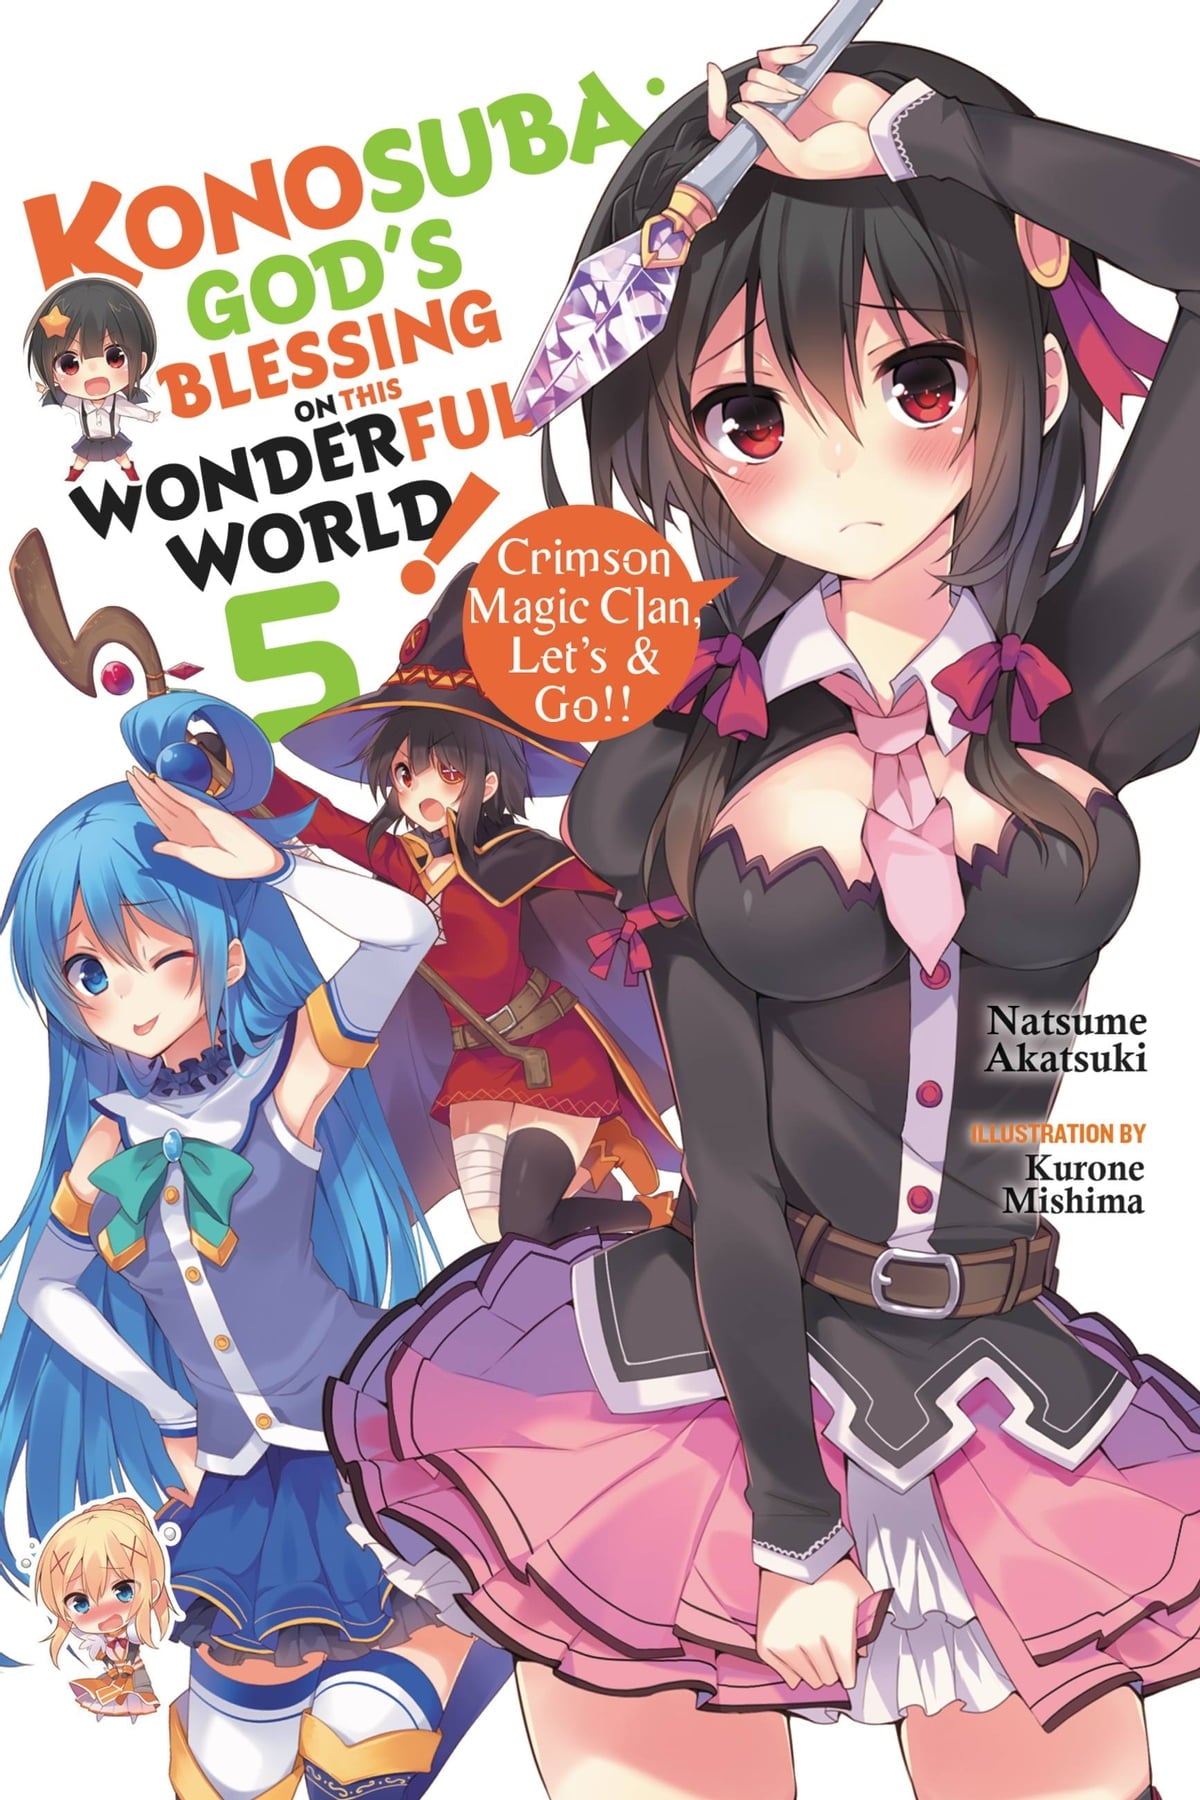 Konosuba: God's Blessing on This Wonderful World! Vol. 05 (Light Novel): Crimson Magic Clan, Let's & Go!!